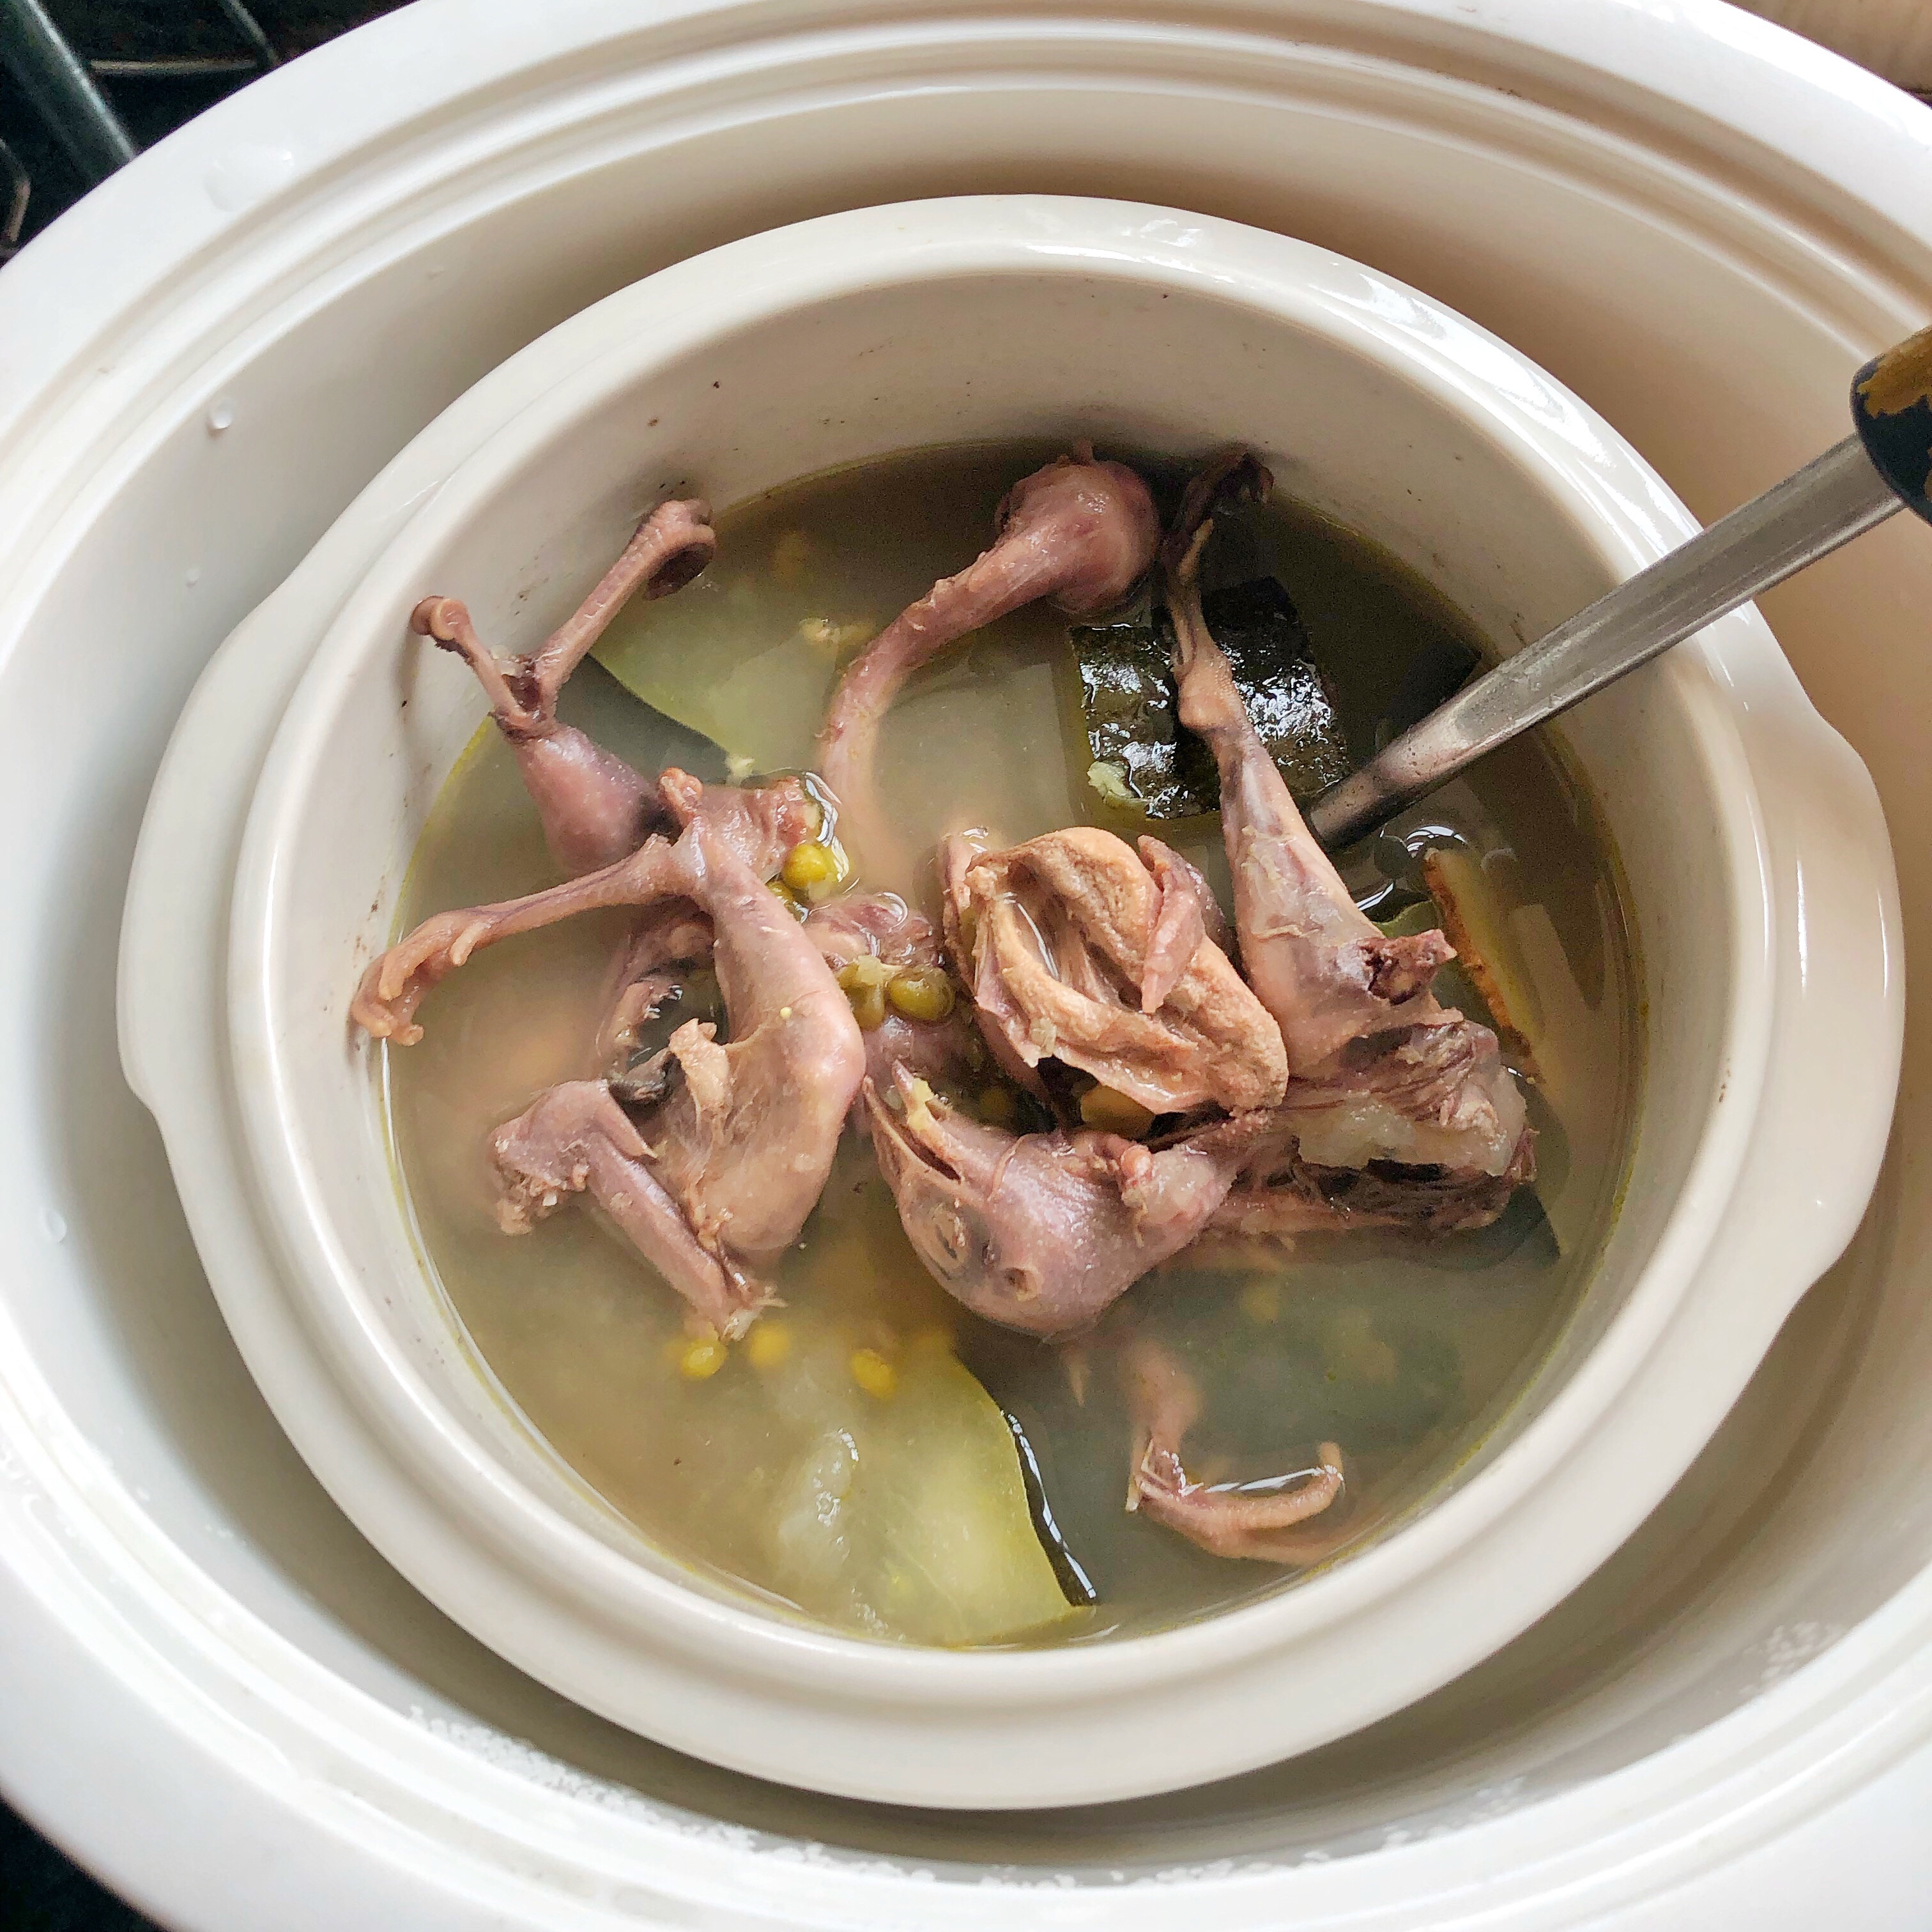 鹌鹑炖绿豆冬瓜汤的做法步骤图 怎么做好吃 Lorii 下厨房